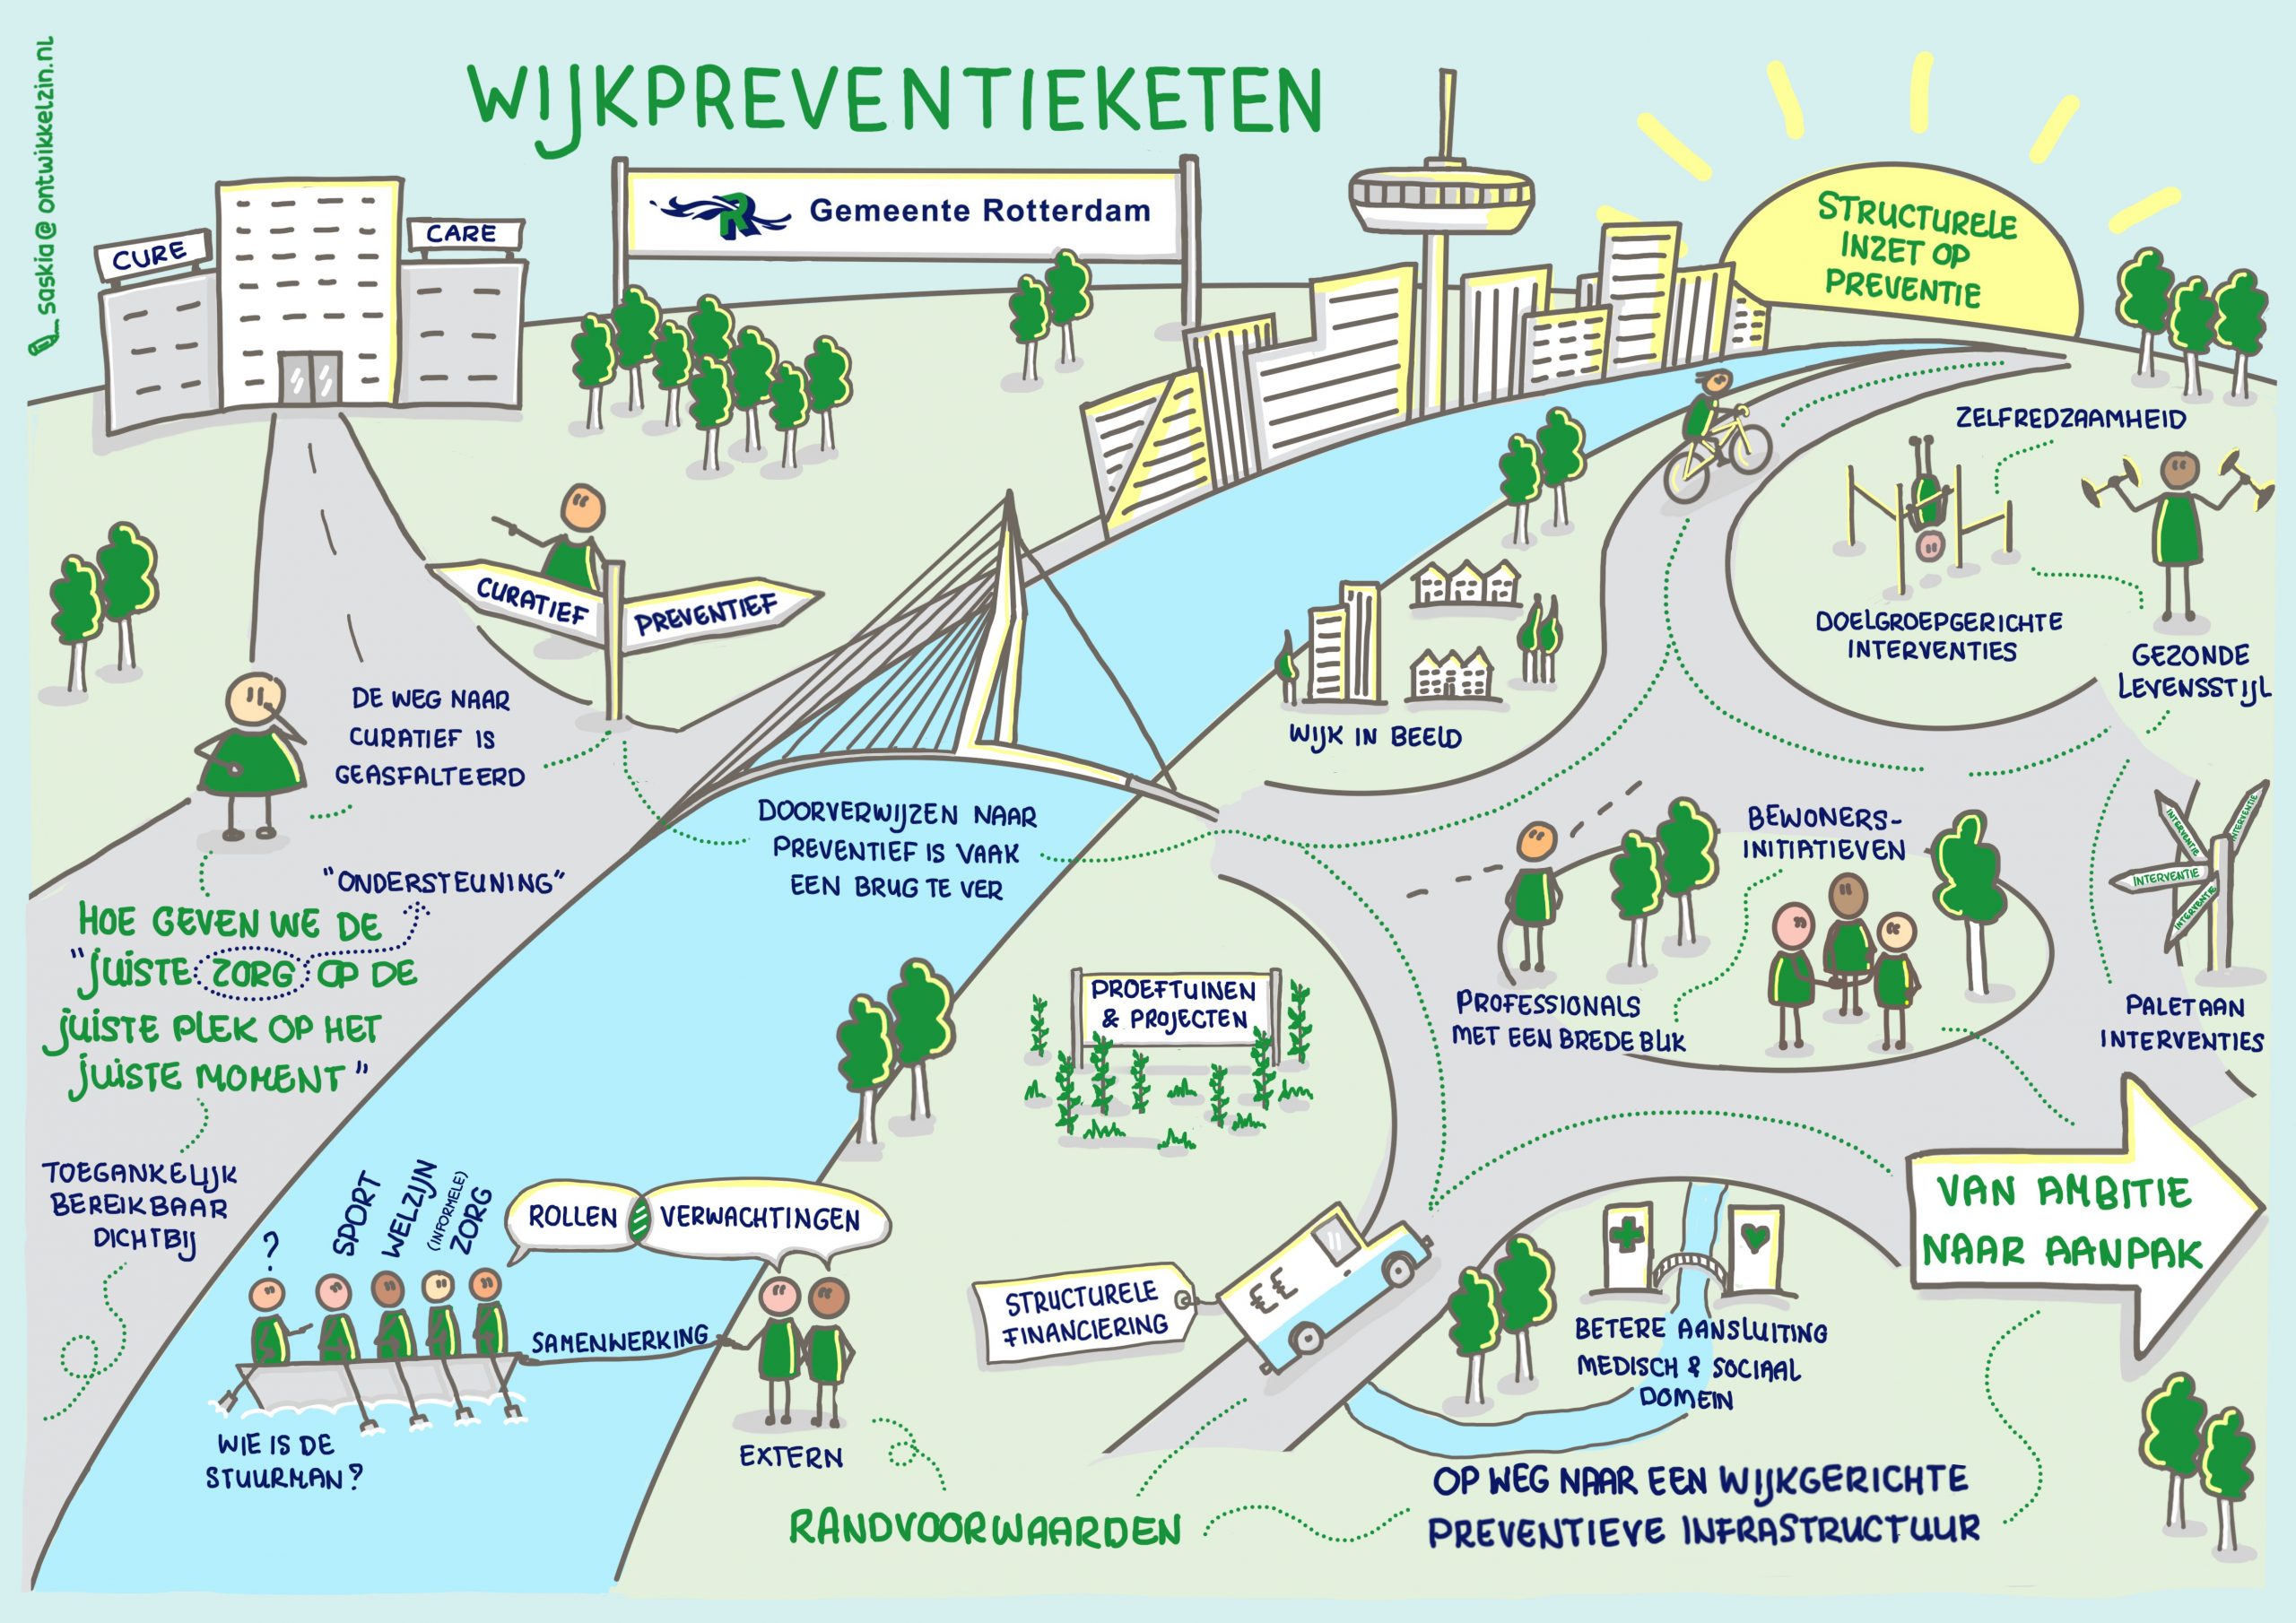 Praatplaat over de wijkpreventieketen in Rotterdam